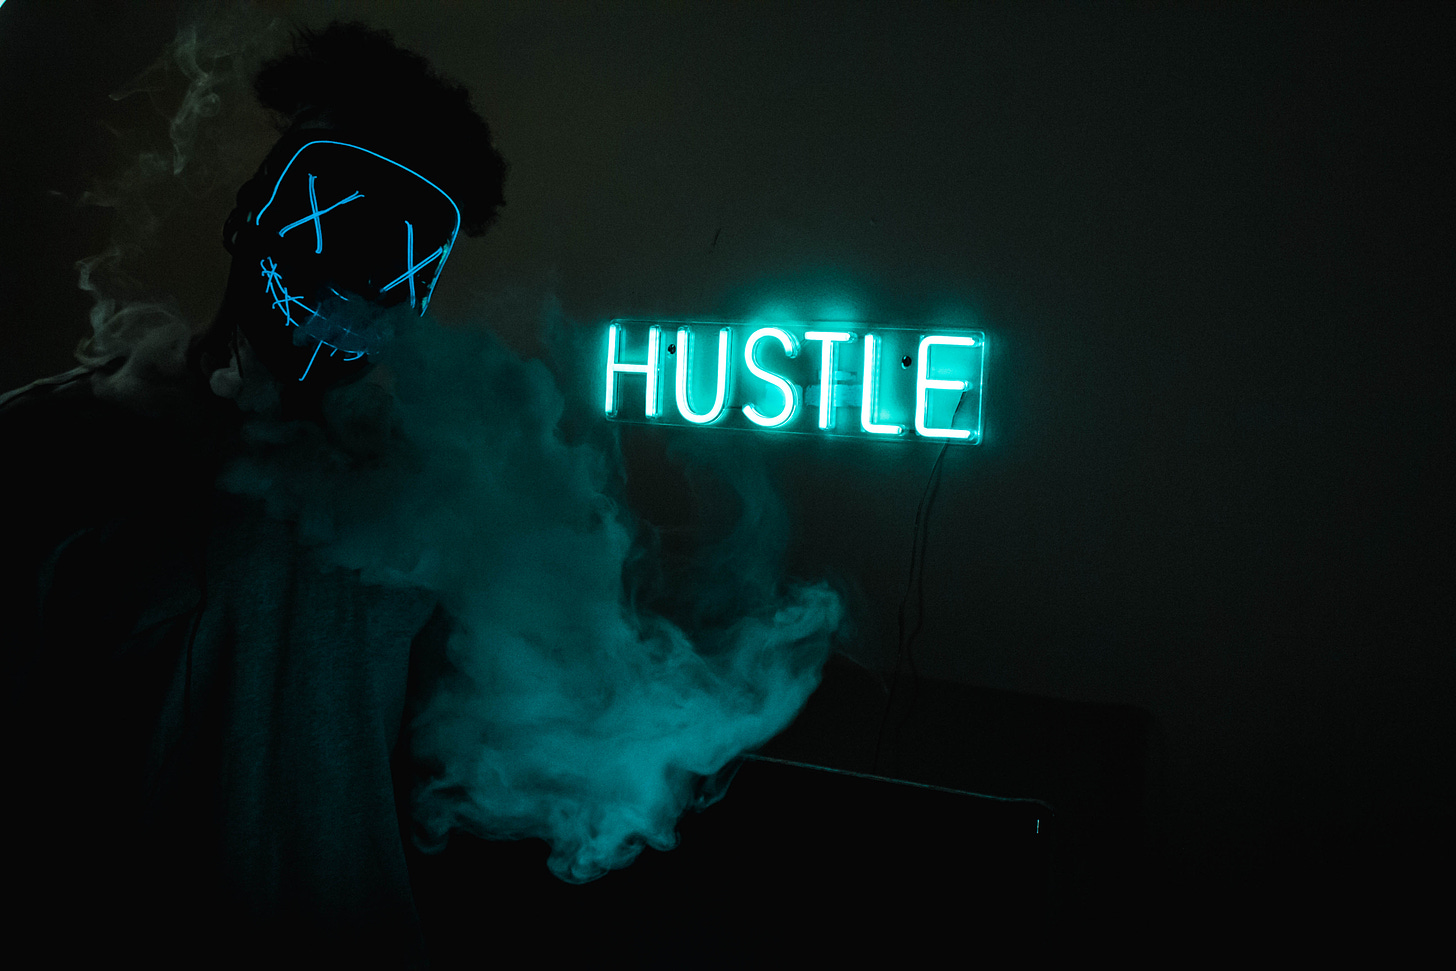 Hustle Led Signage · Free Stock Photo